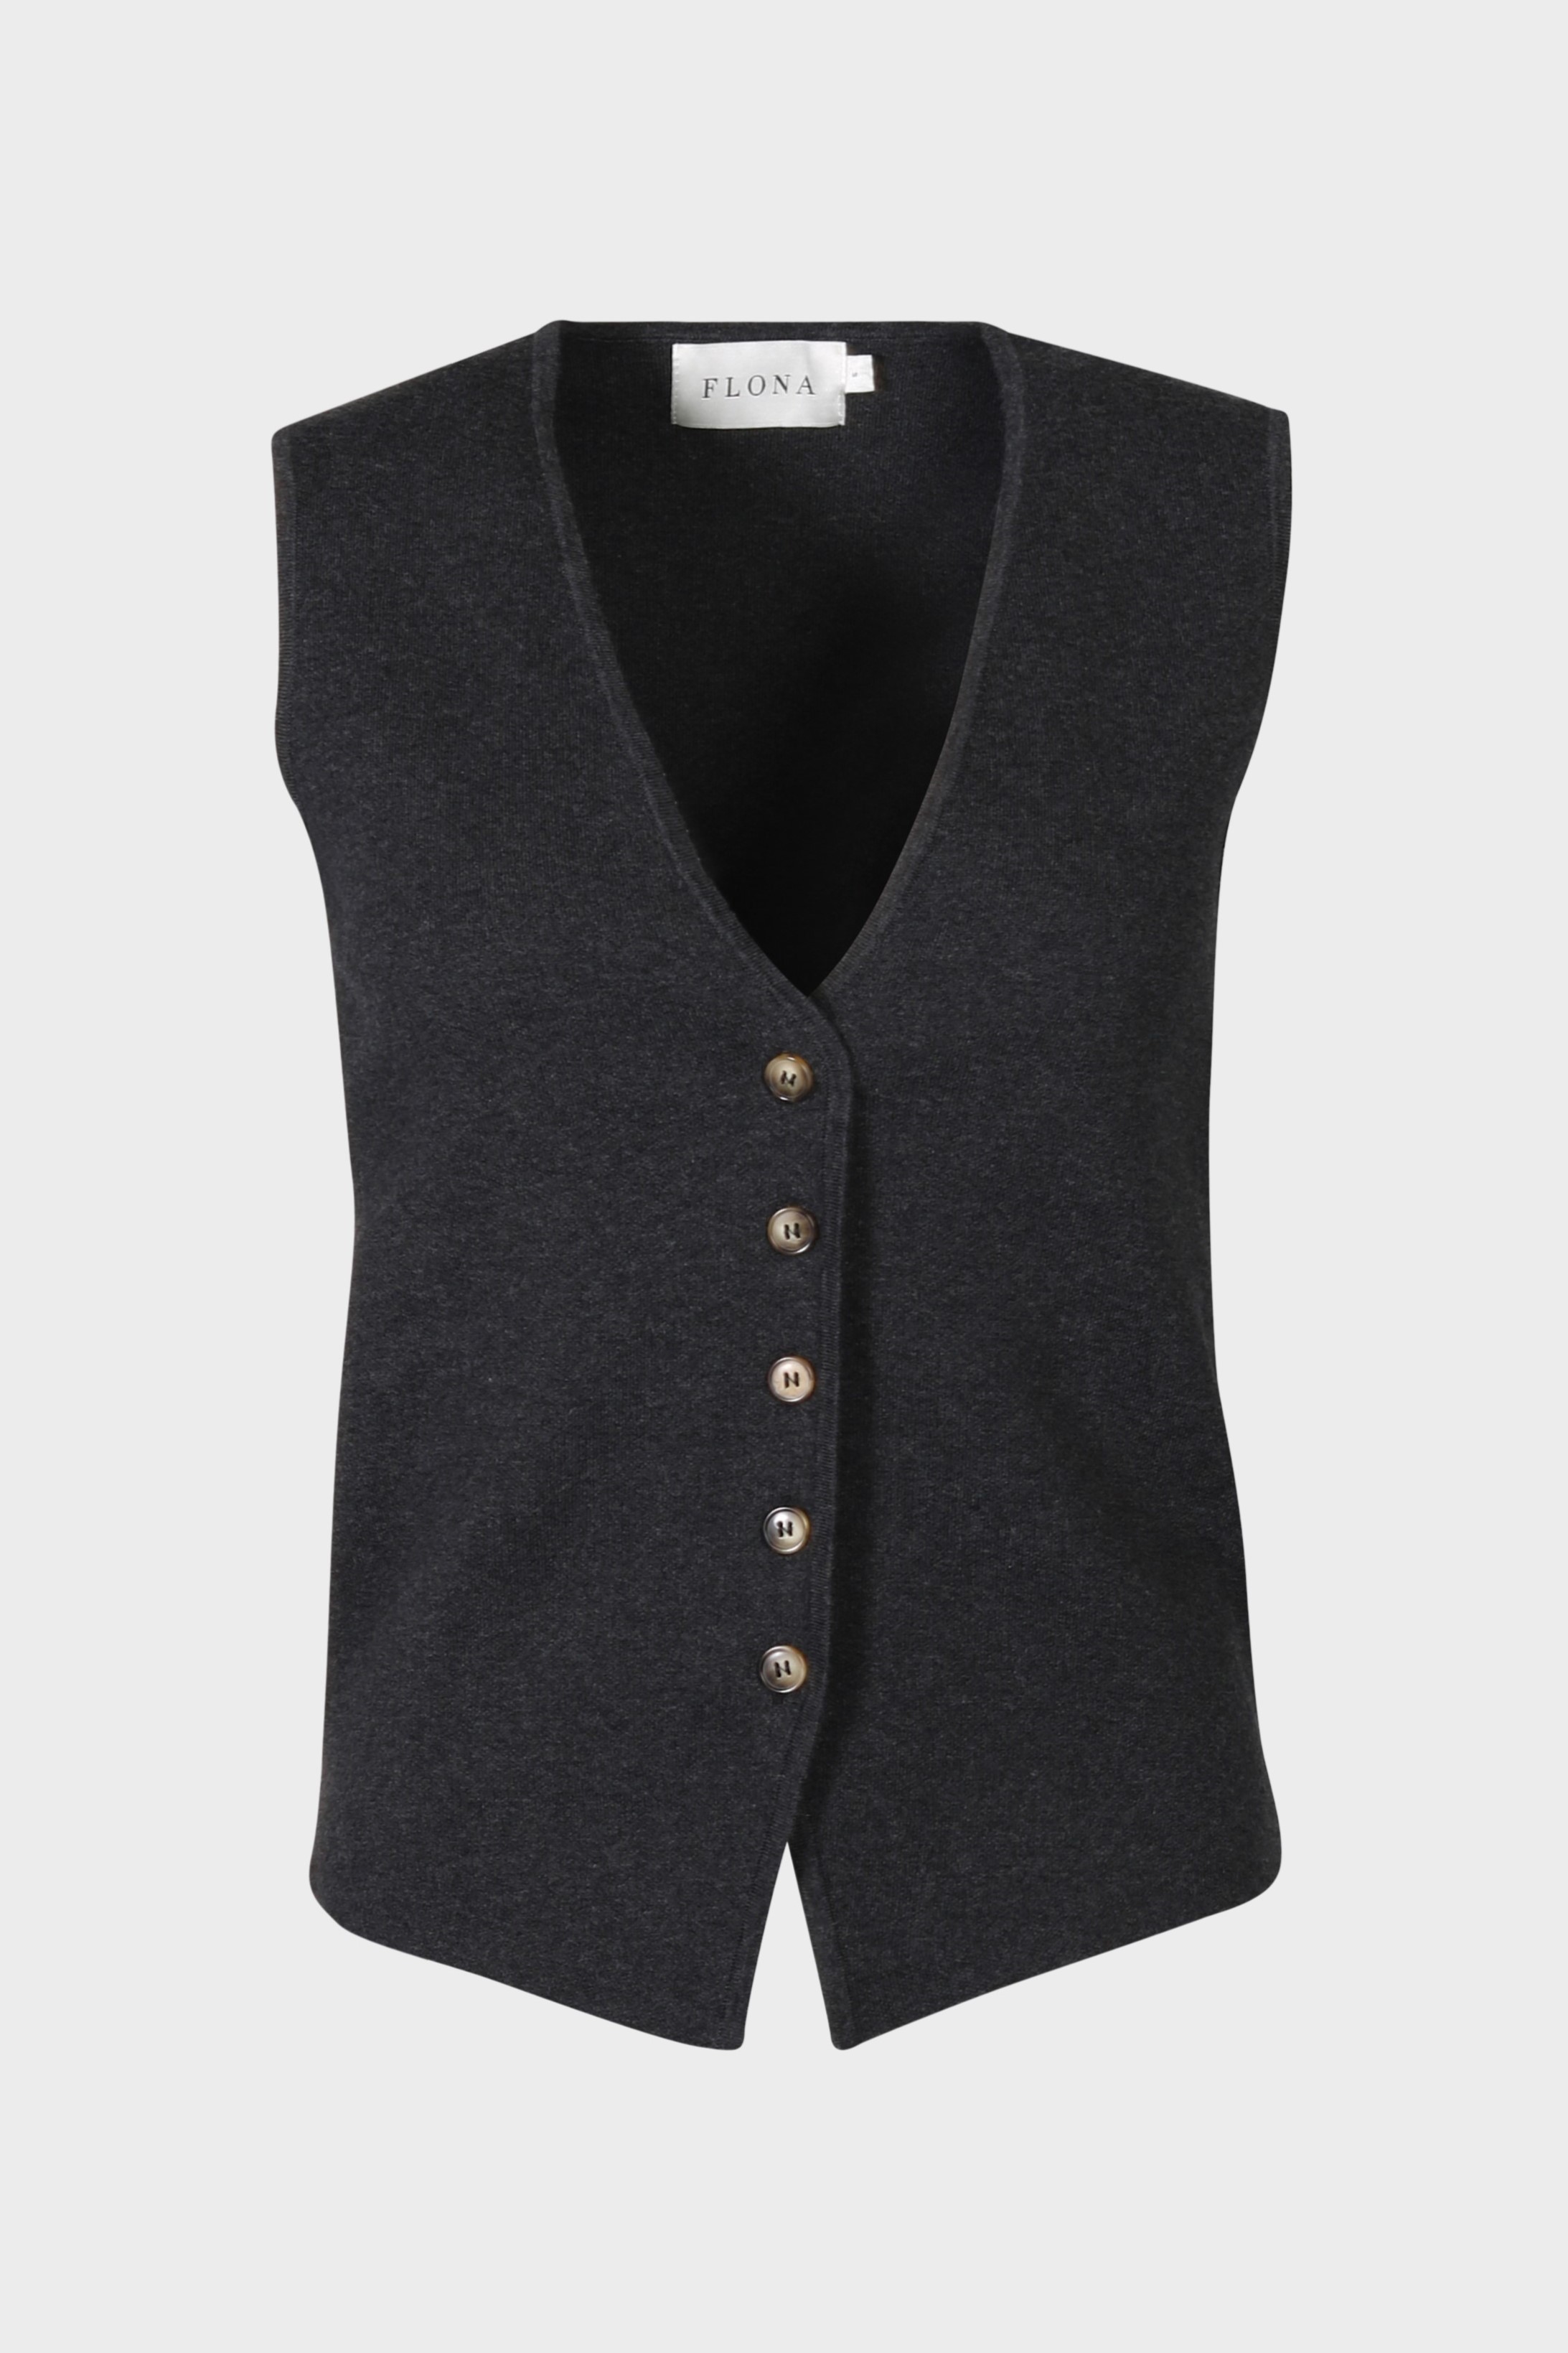 FLONA Cotton/ Cashmere Knit Vest in Dark Grey